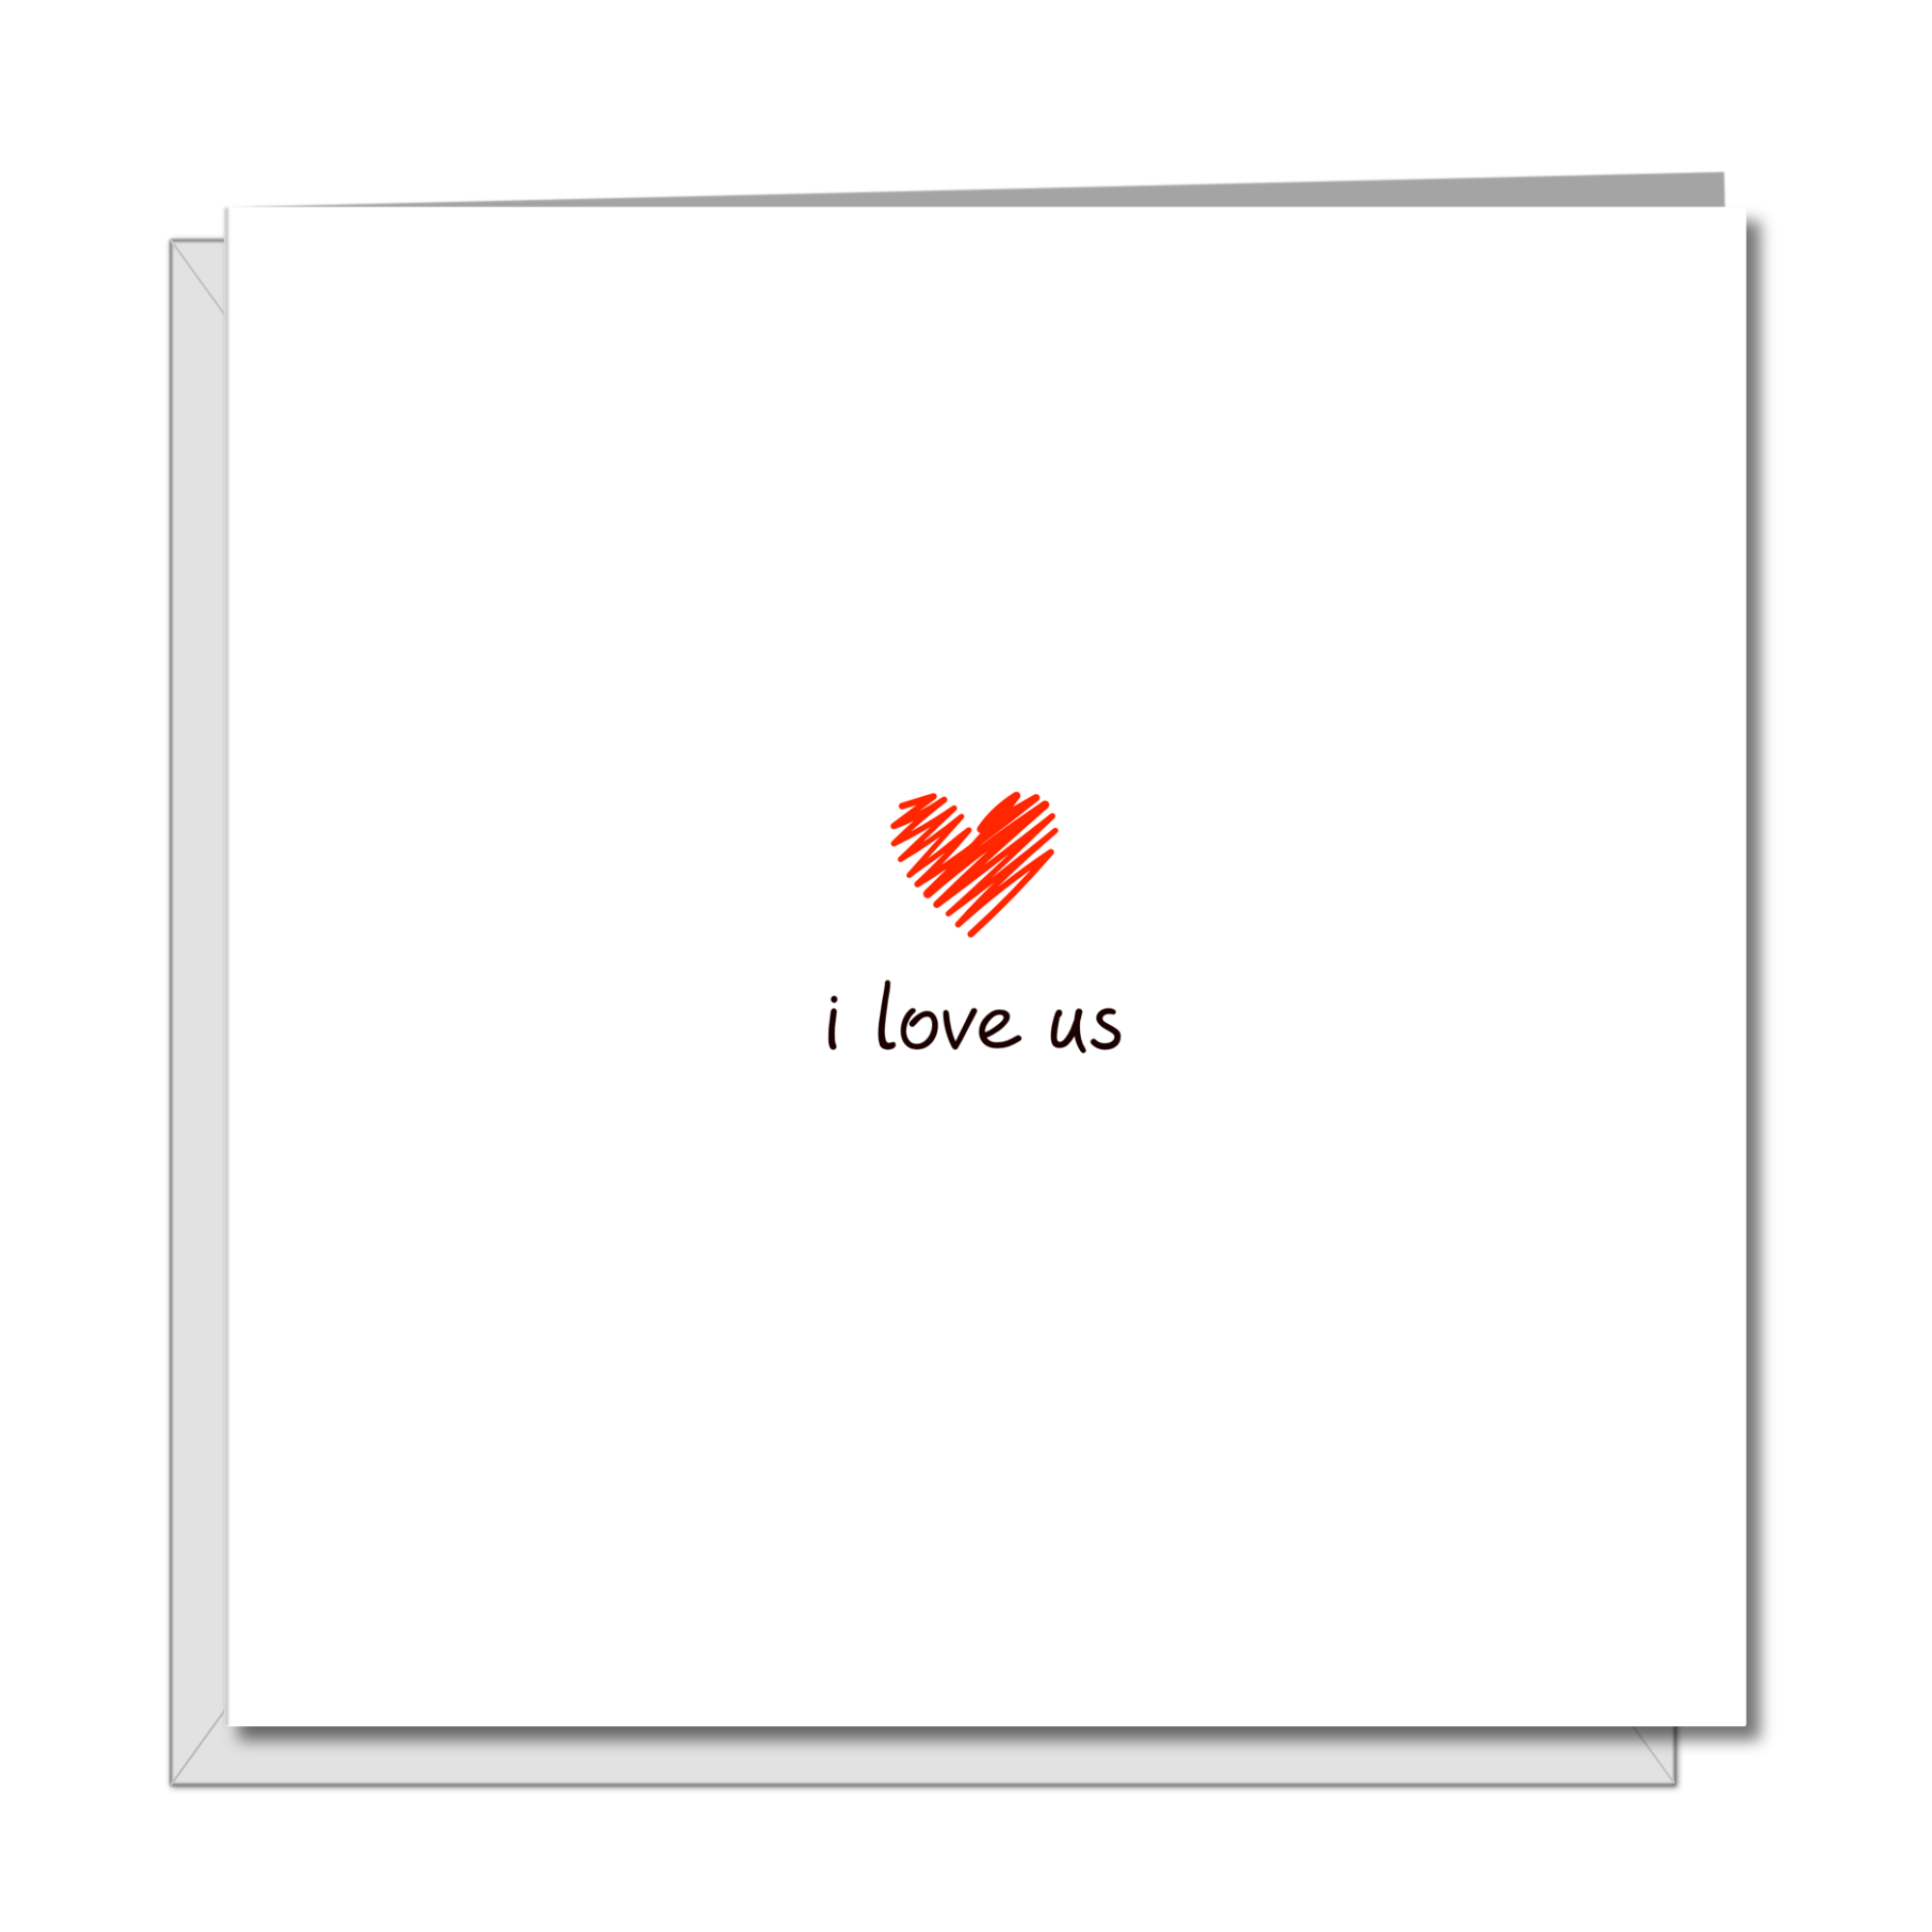 I Love Us Card  - by Swizzoo